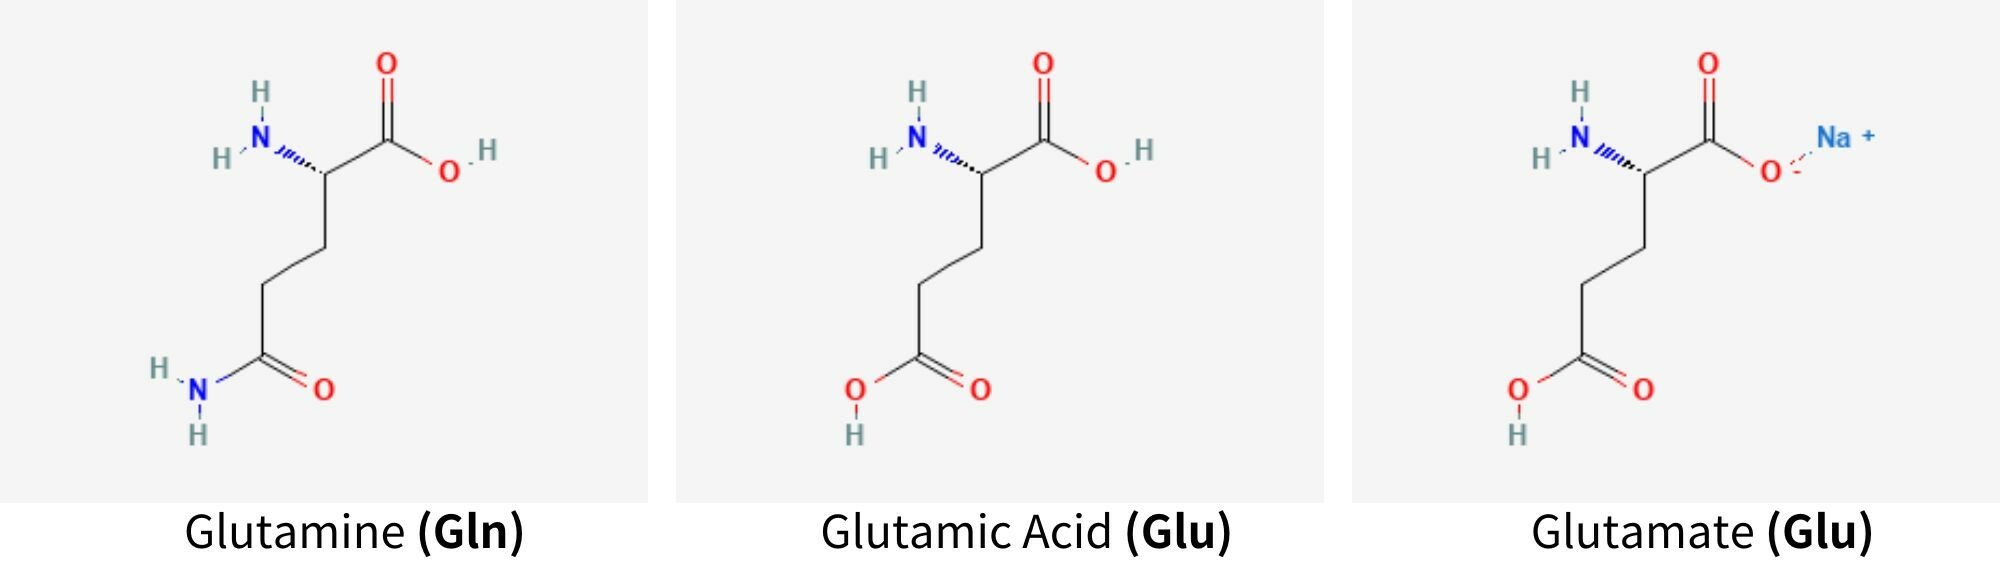 GLUTAMINE、GLUTAMATE和GLUTAMIC ACID結構與功能皆不同